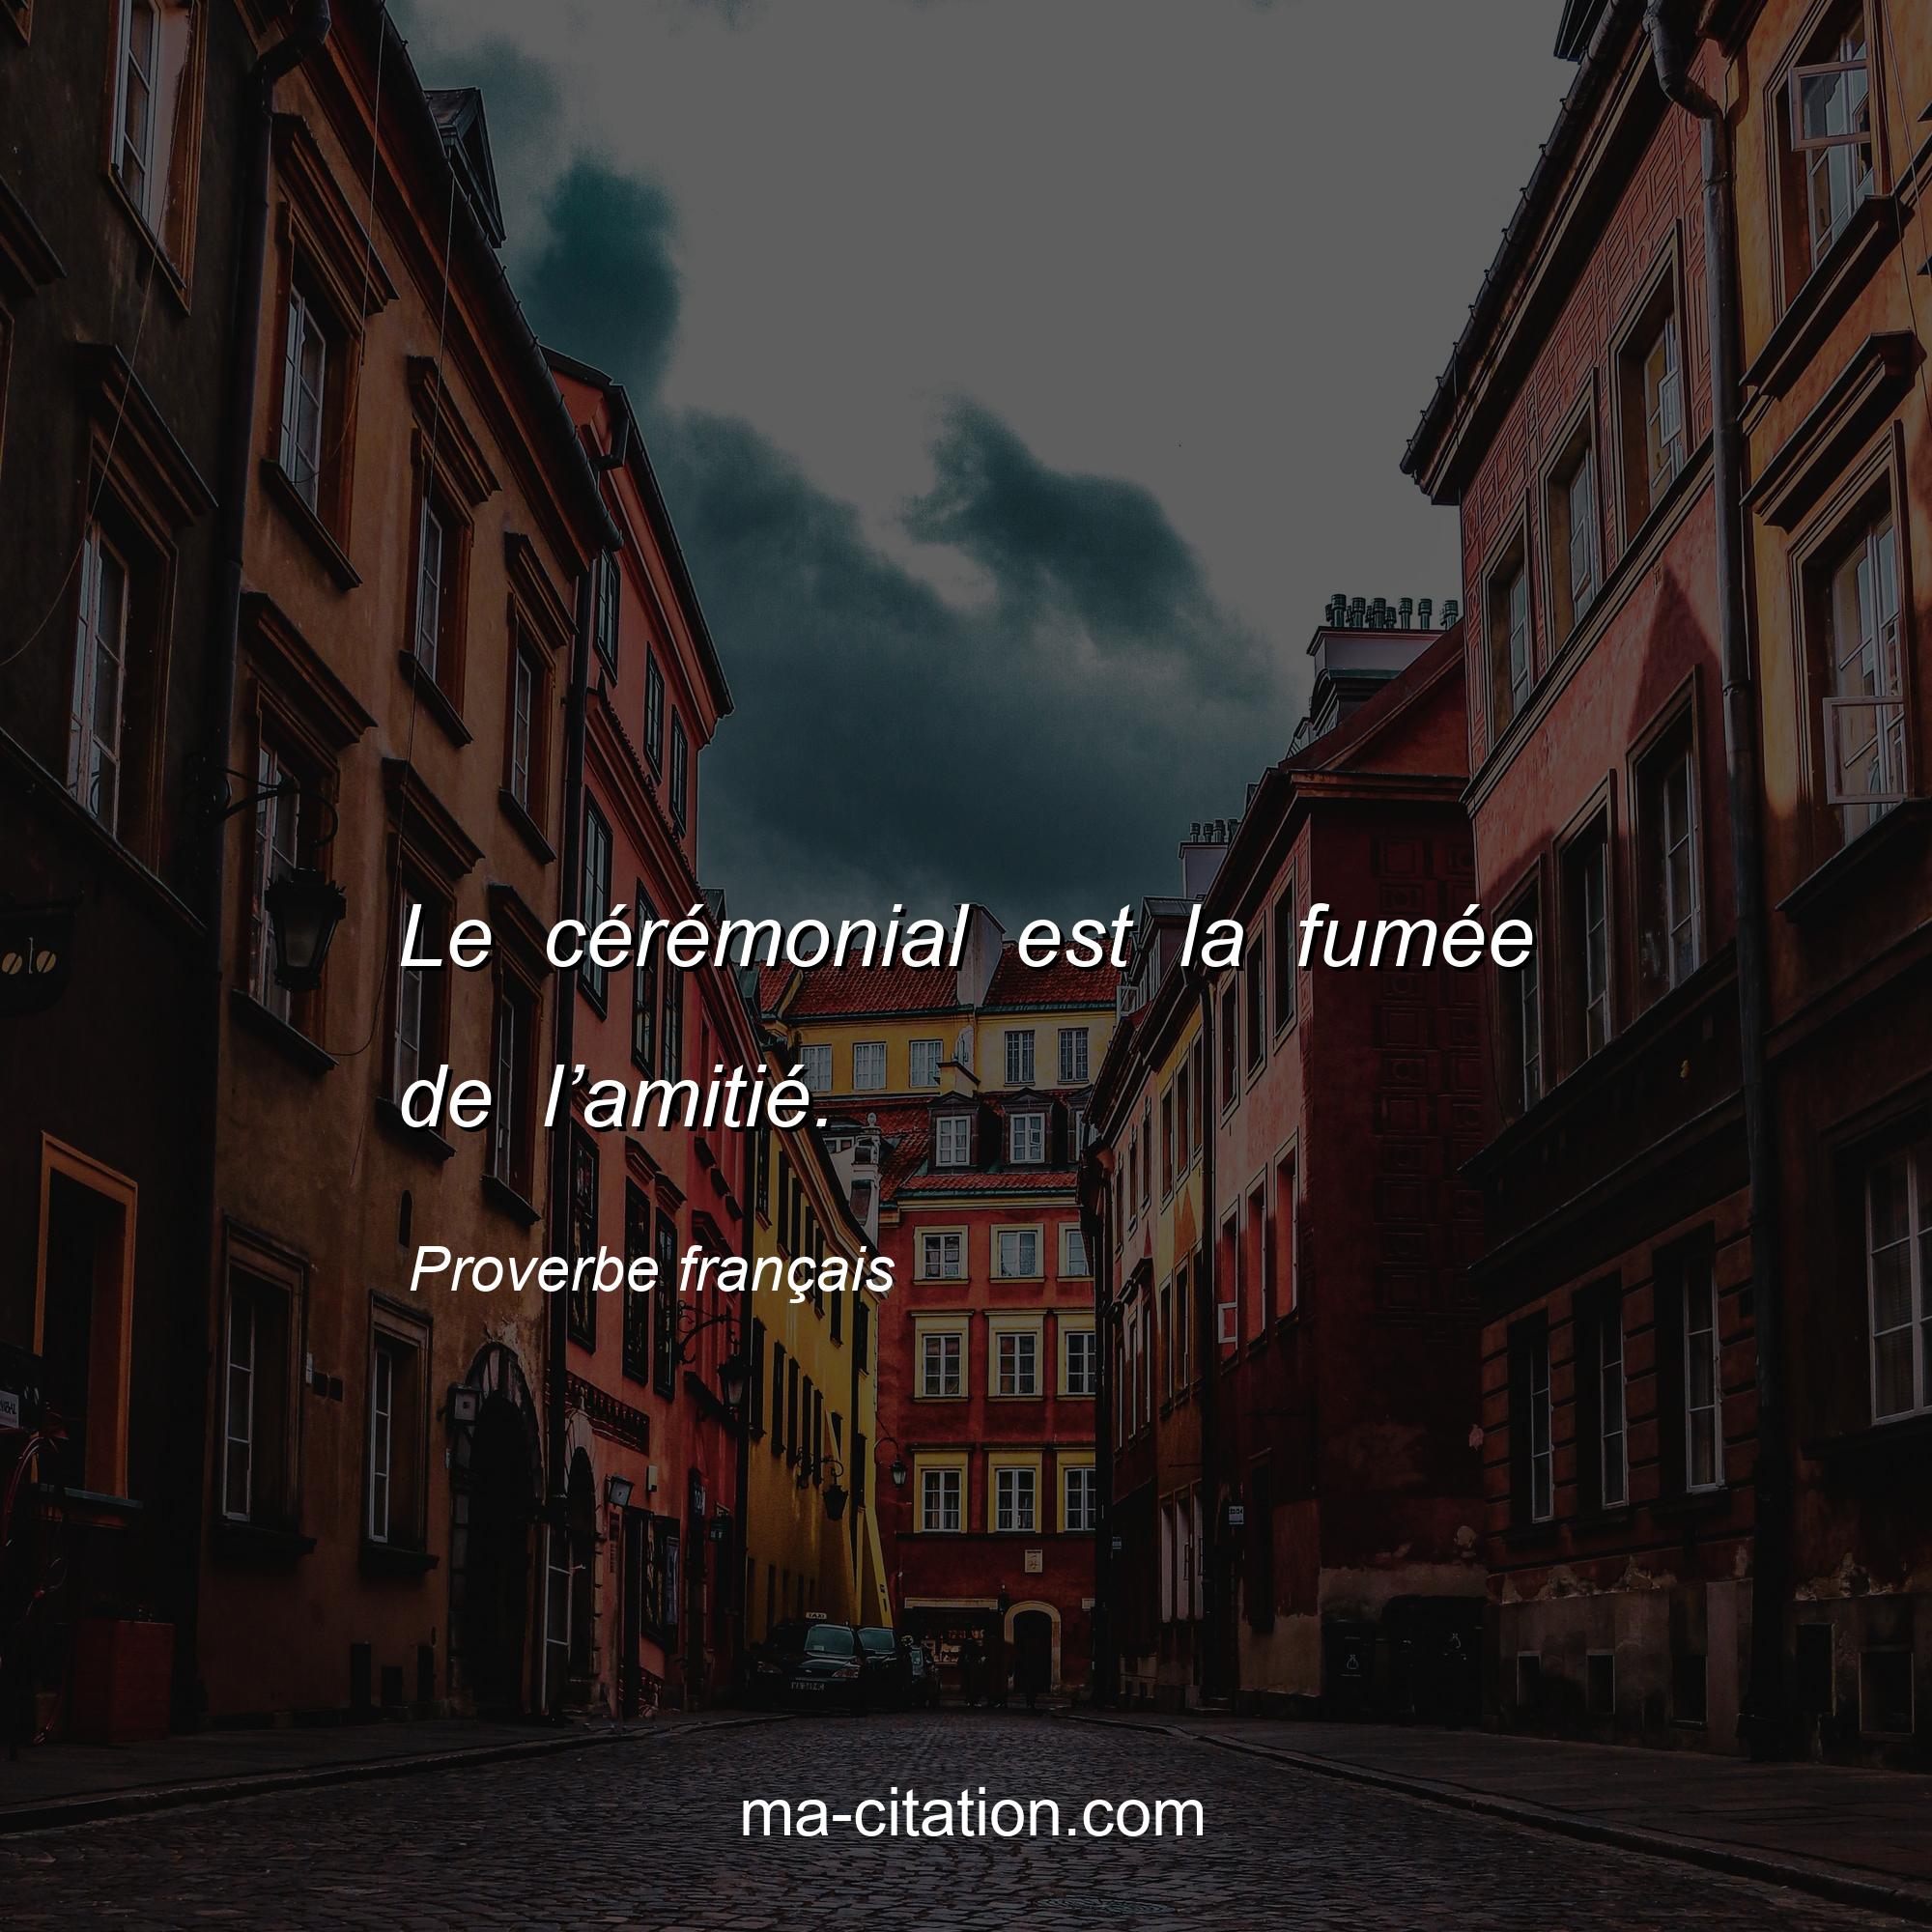 Proverbe français : Le cérémonial est la fumée de l’amitié.